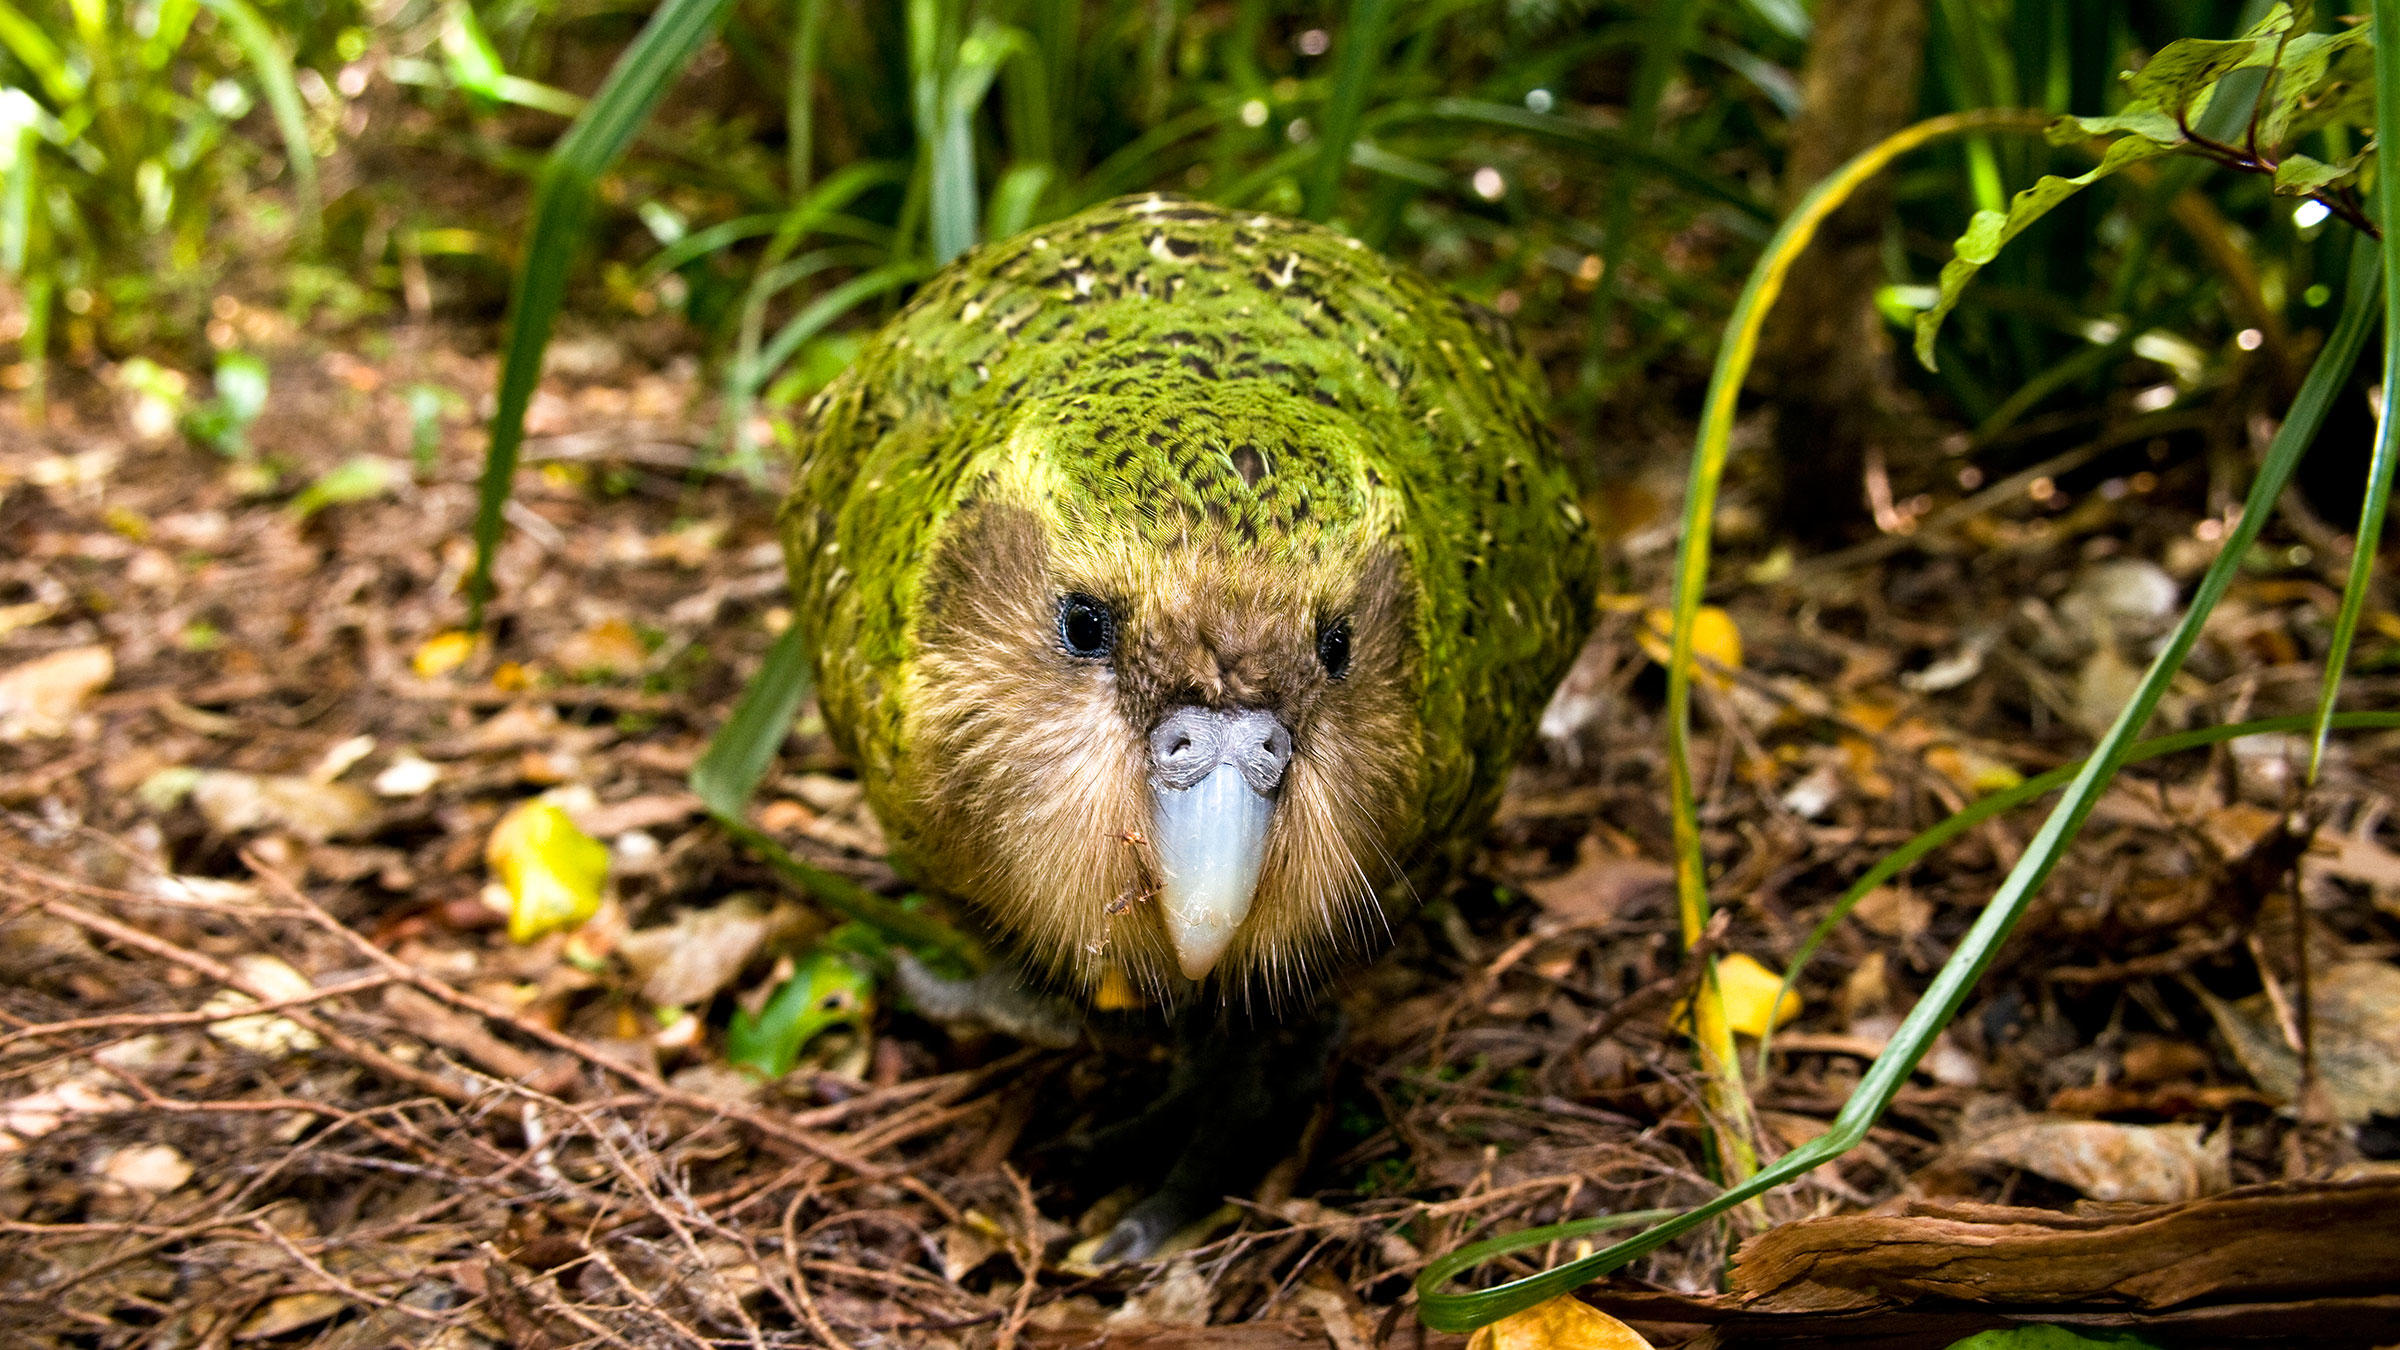 کاکاپو (kākāpō) سنگین ترین طوطی جهان است که بیشترین میزان عمر را در میان پرندگان داشته و در سال 2008 عنوان پرنده سال نیوزیلند را بدست آورد.